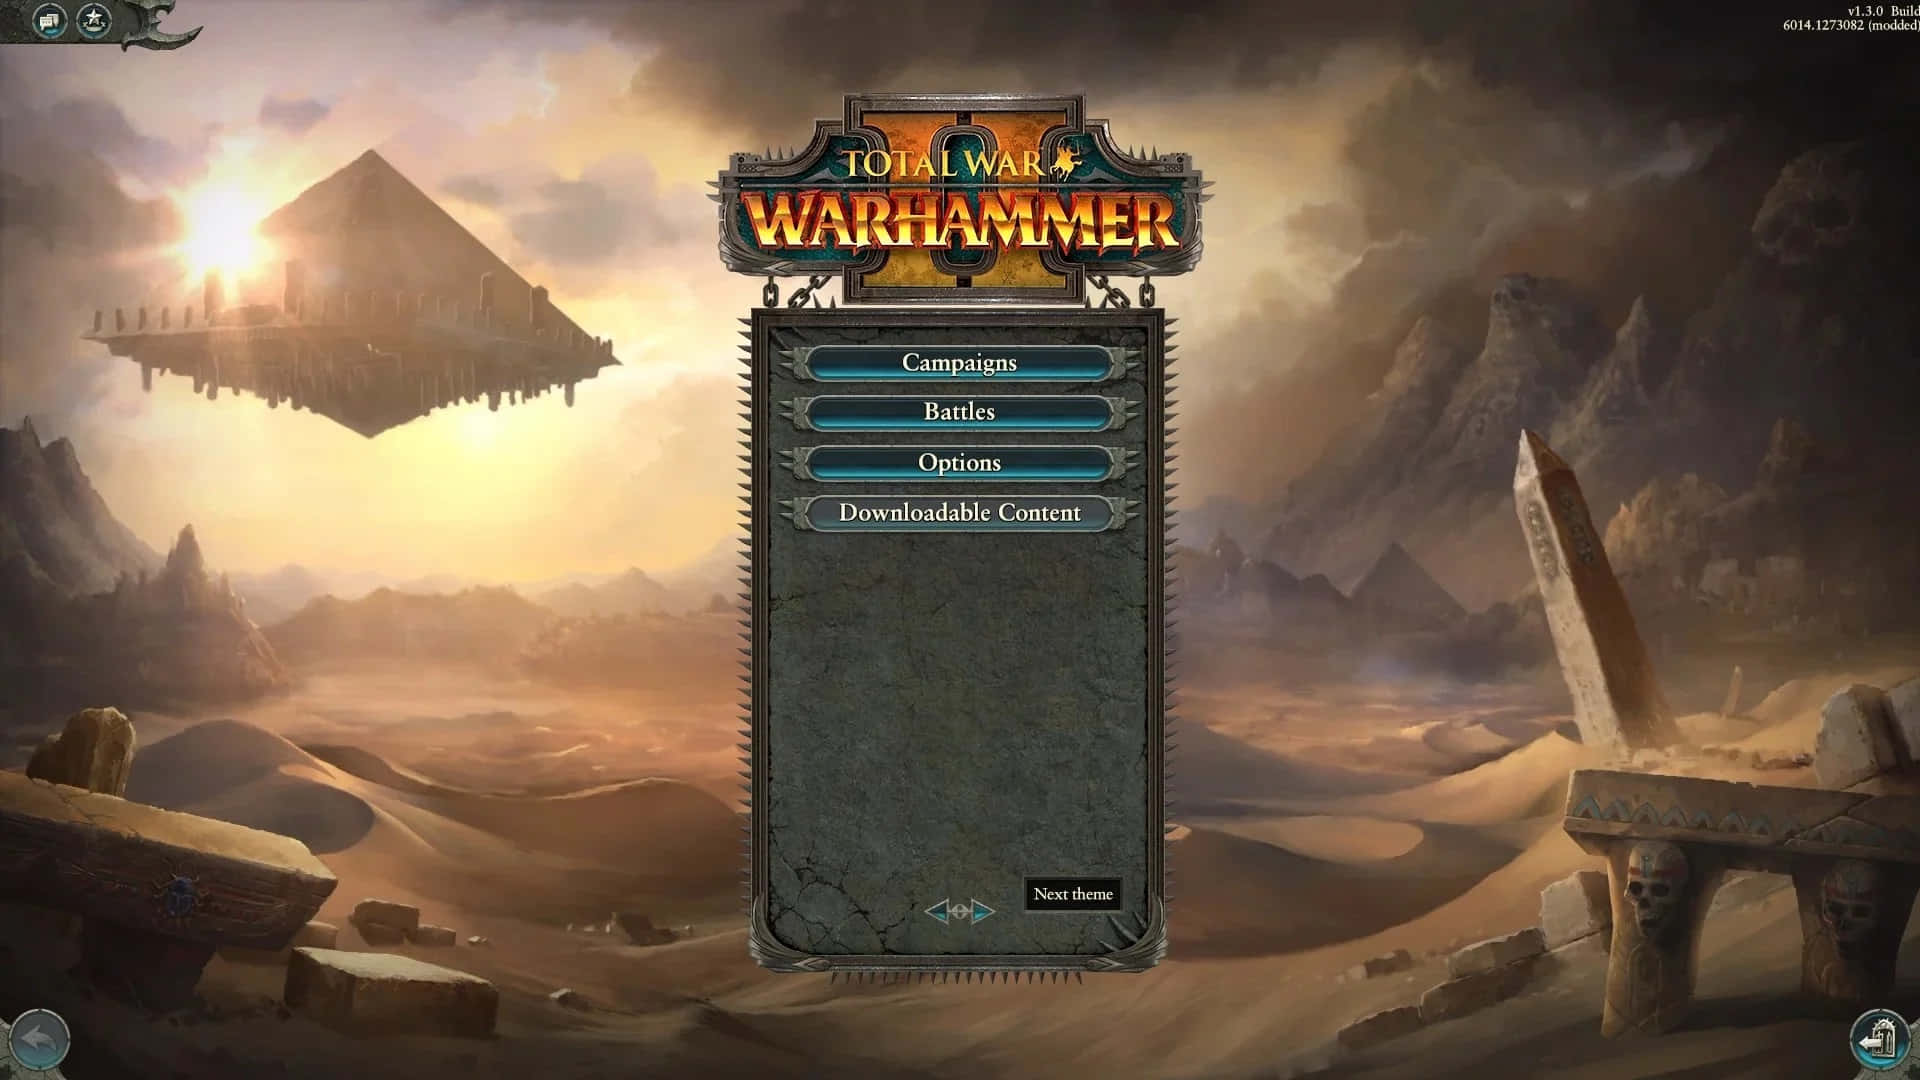 Enslående Bild Av Ett Slagfält I Spelet Hd Total War Warhammer Ii